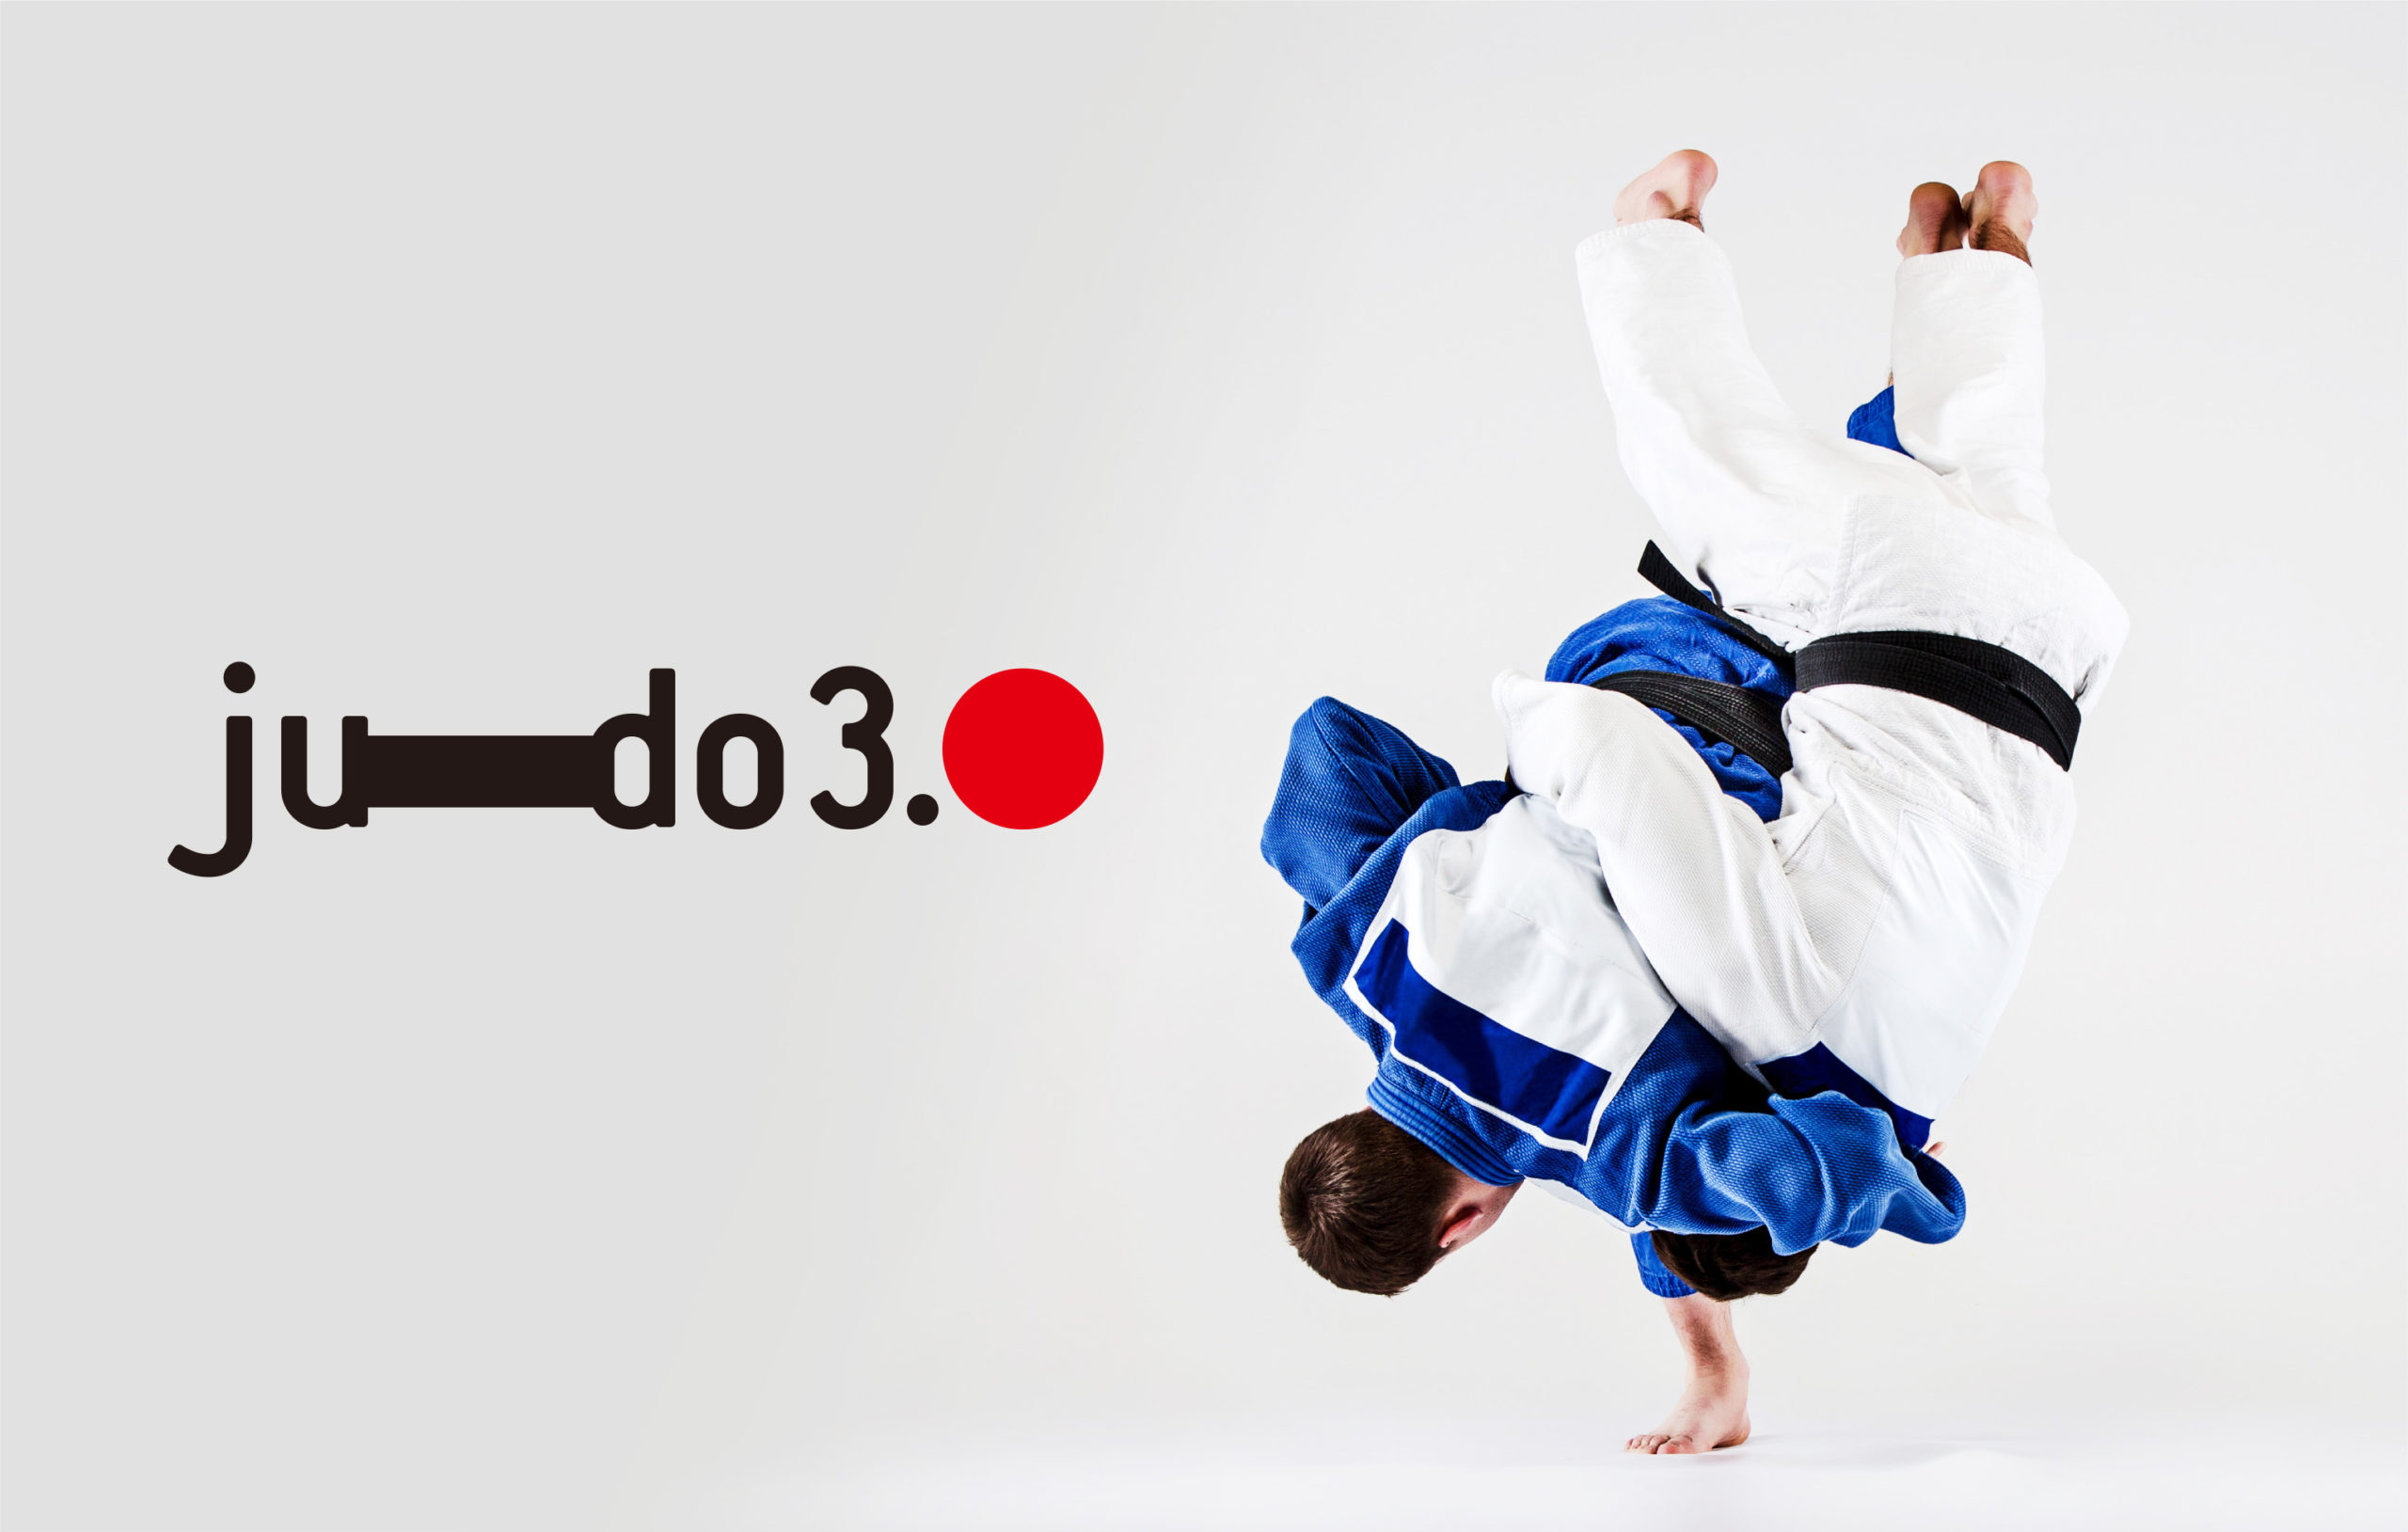 Judo3.0